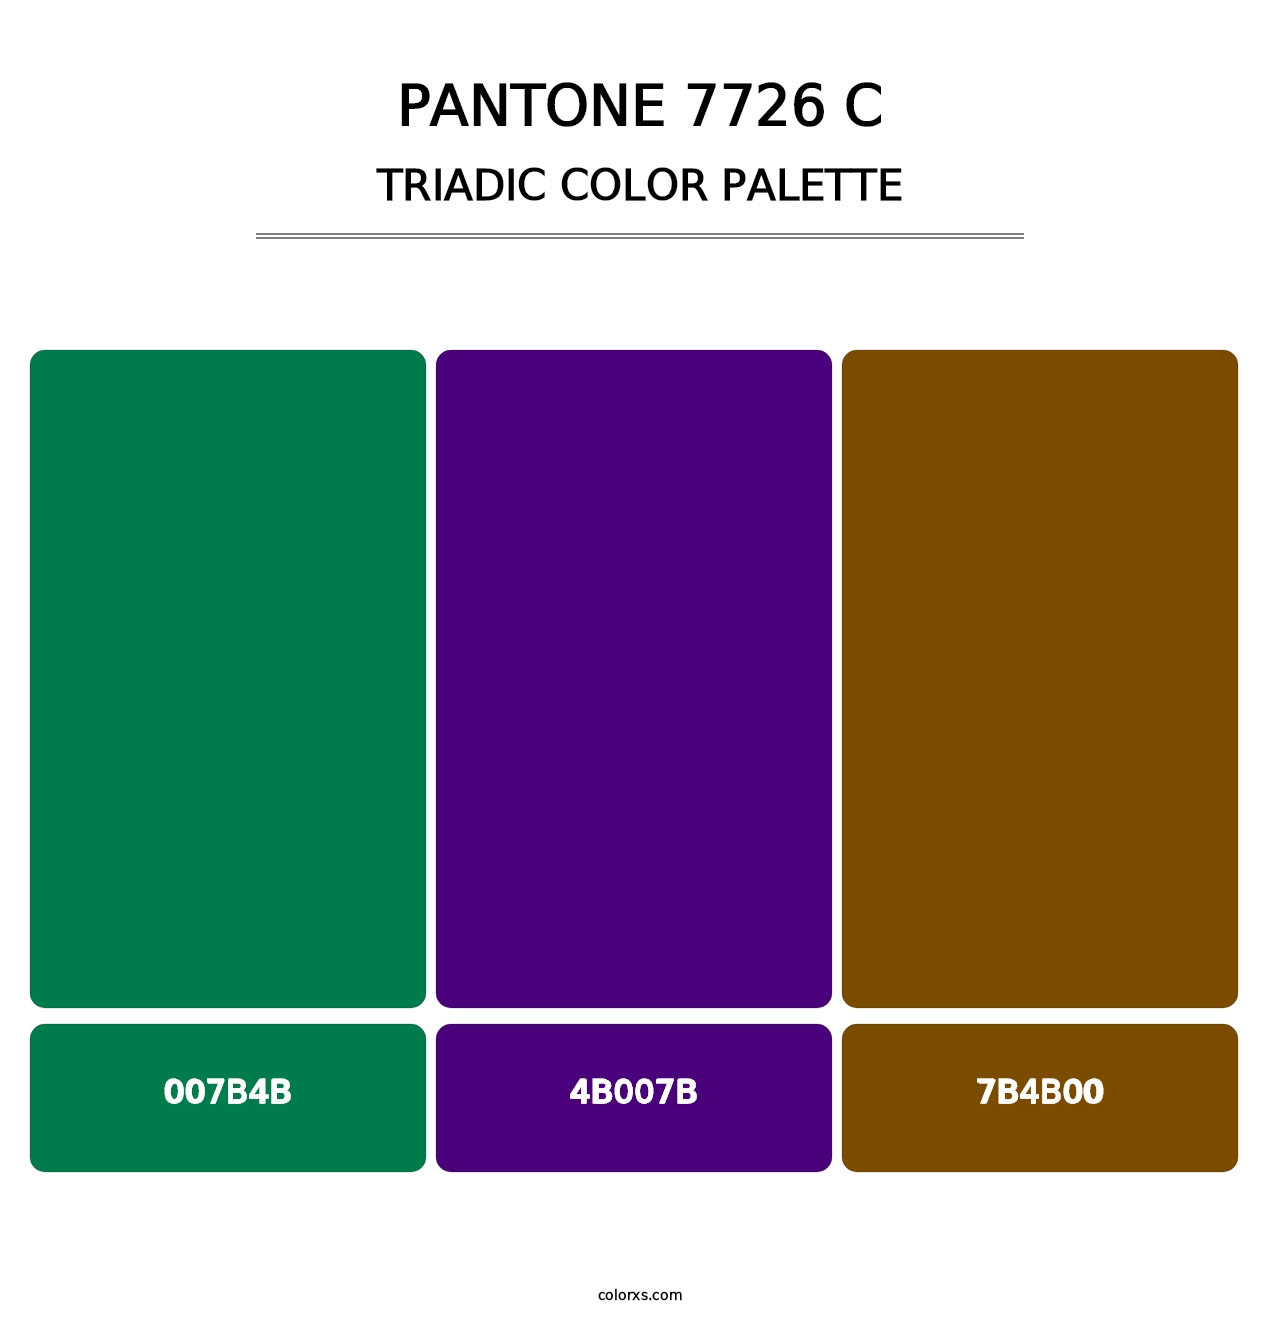 PANTONE 7726 C - Triadic Color Palette